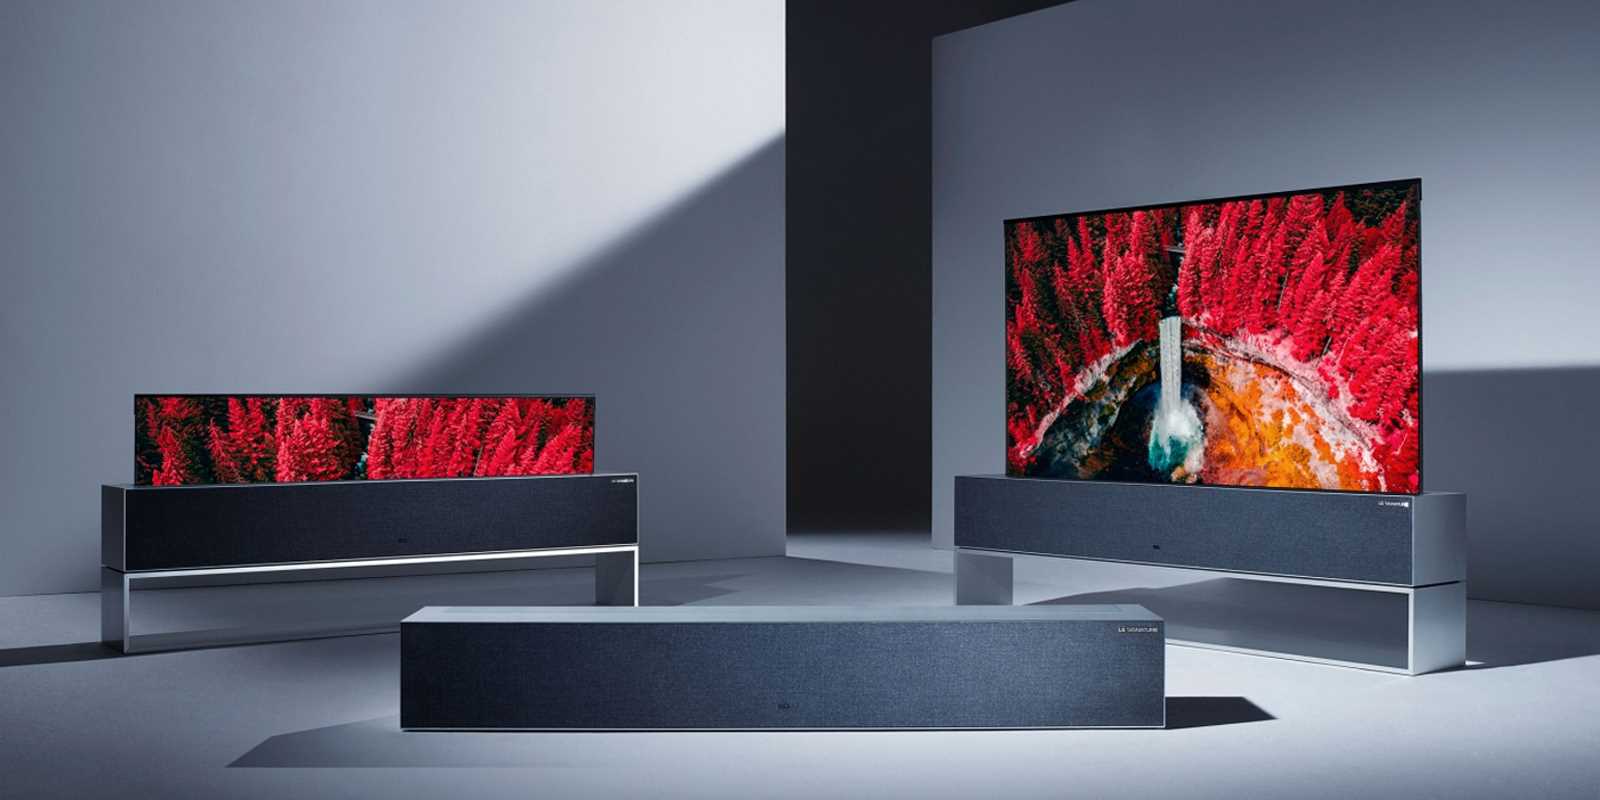 LG | TVs OLED passam 10 milhões de unidades em vendas